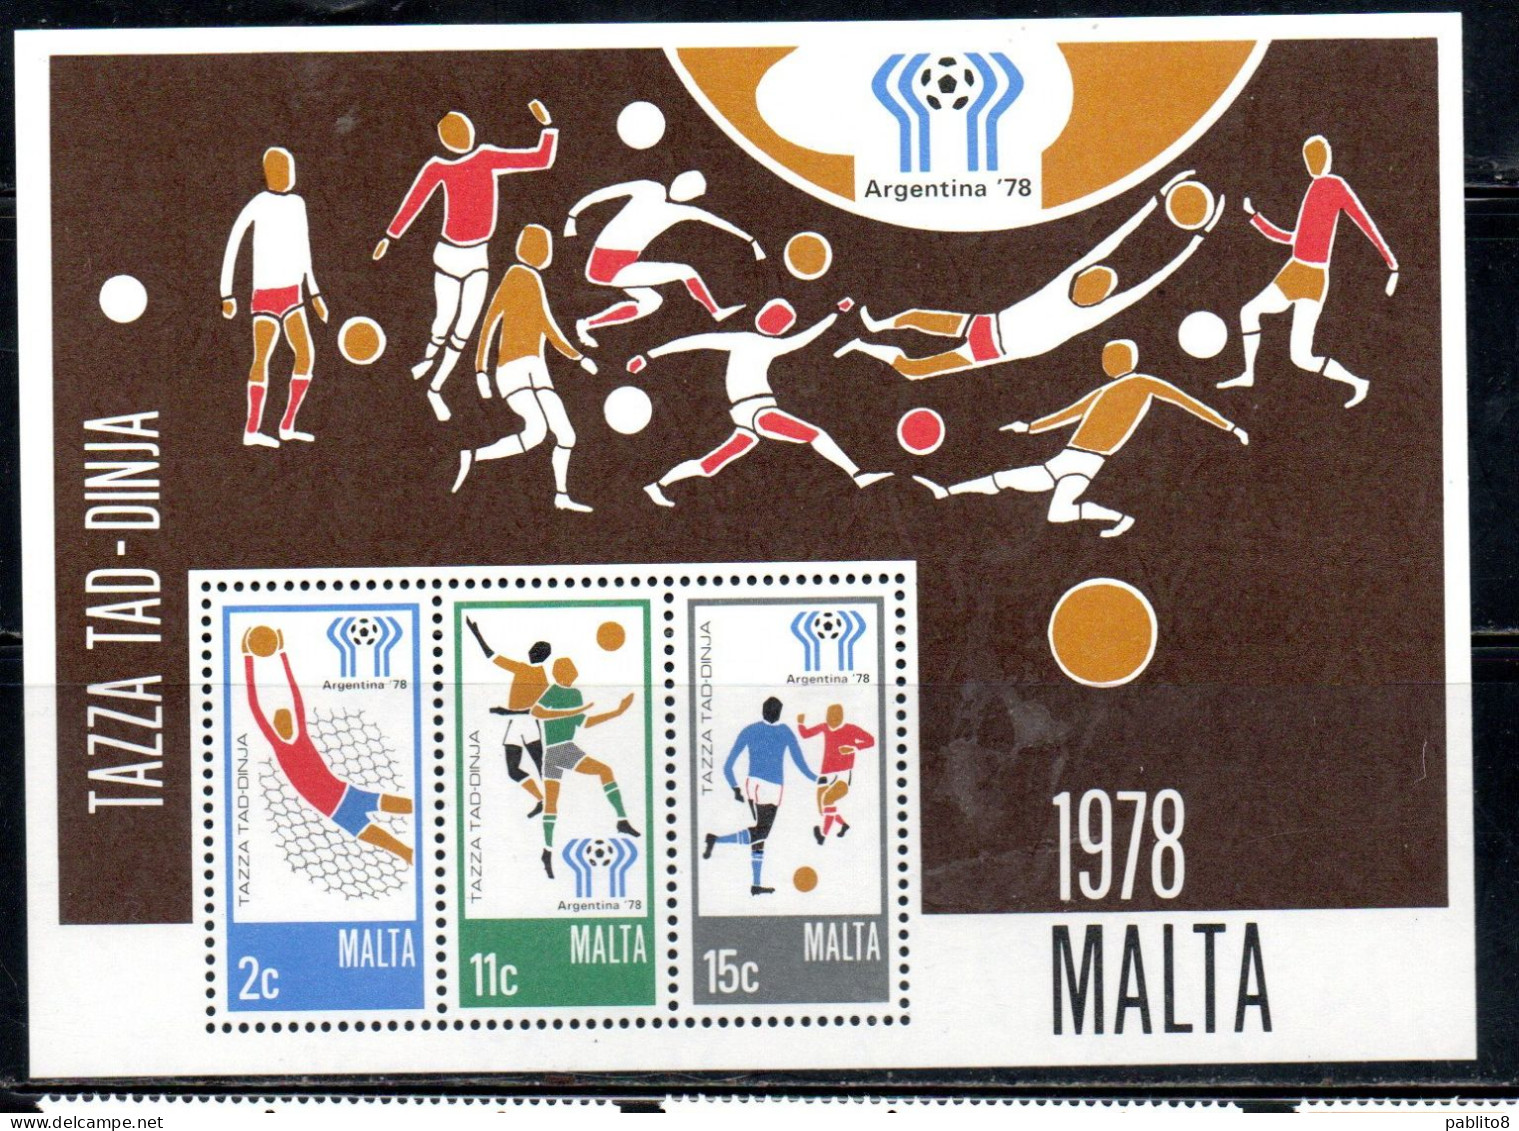 MALTA 1978 WORLD CUP SOCCER CHAMPIONSHIP CAMPIONATO MONDIALE DI CALCIO ARGENTINA BLOCK SHEET MNH - Malta